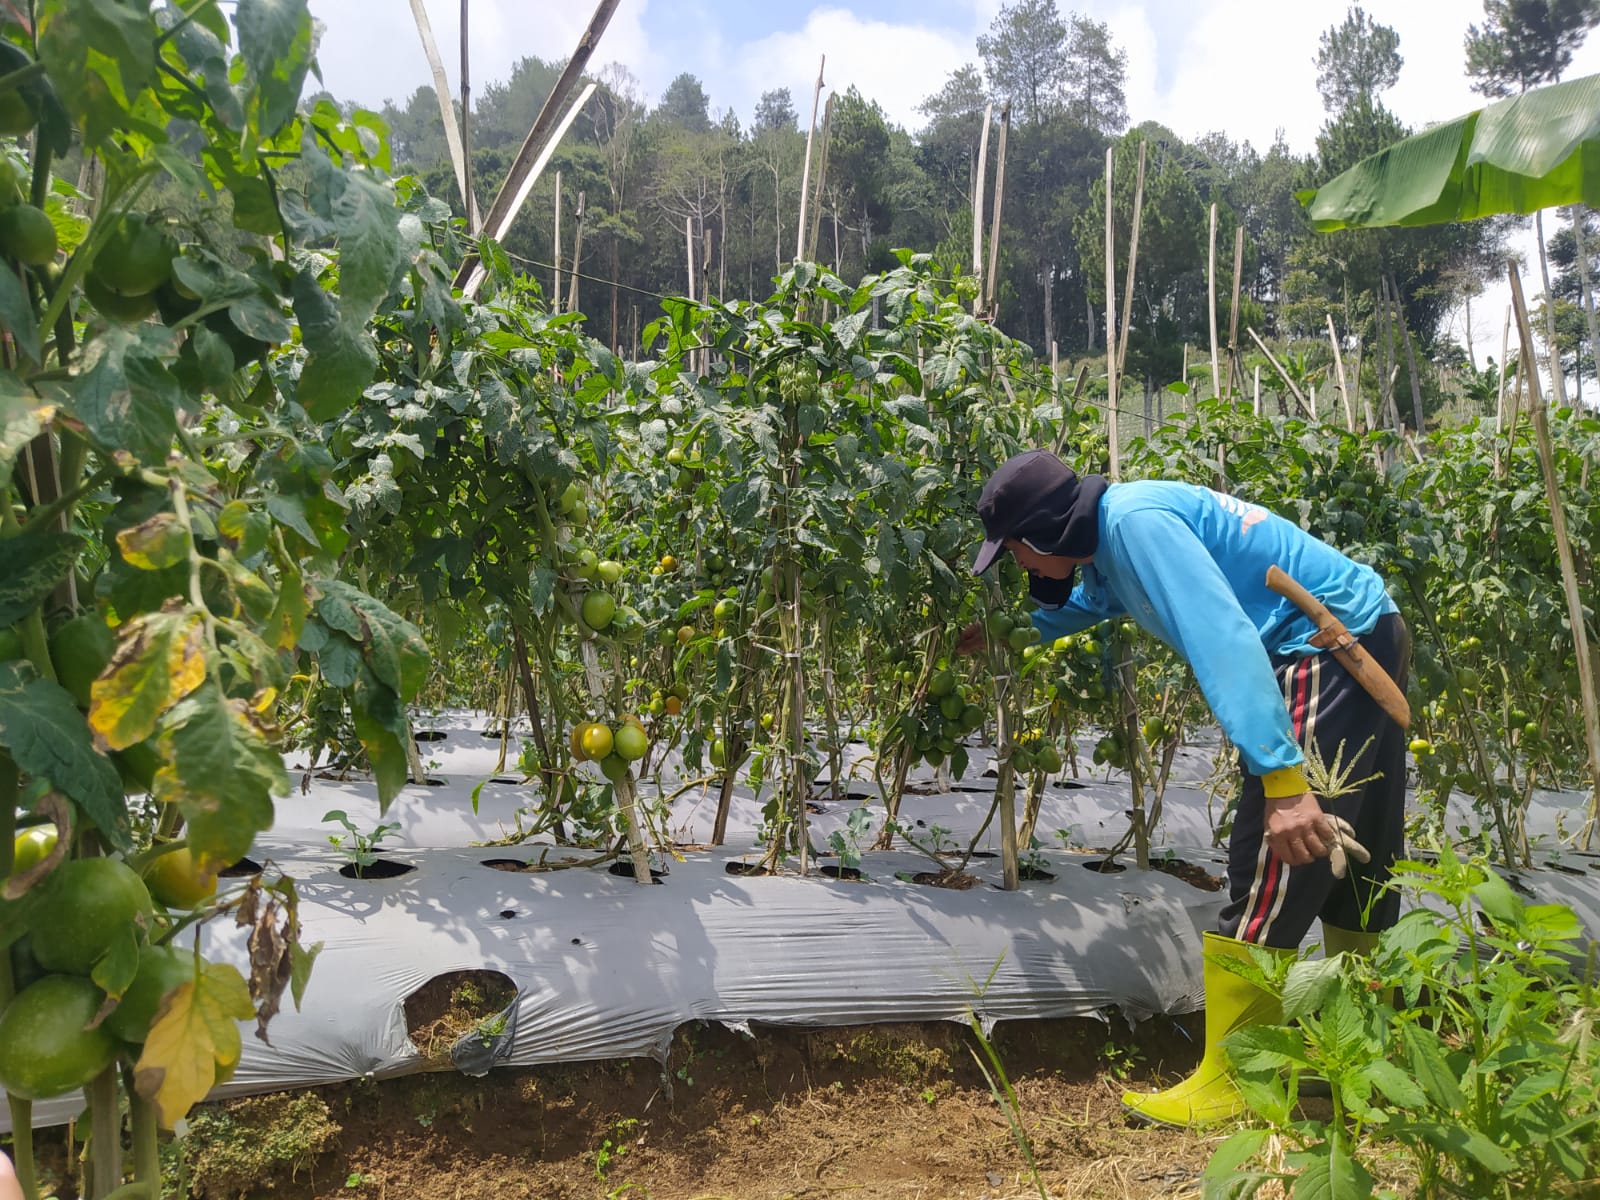 PERIKSA: Petani di Lembang mengecek tomat miliknya sebelum dipanen.